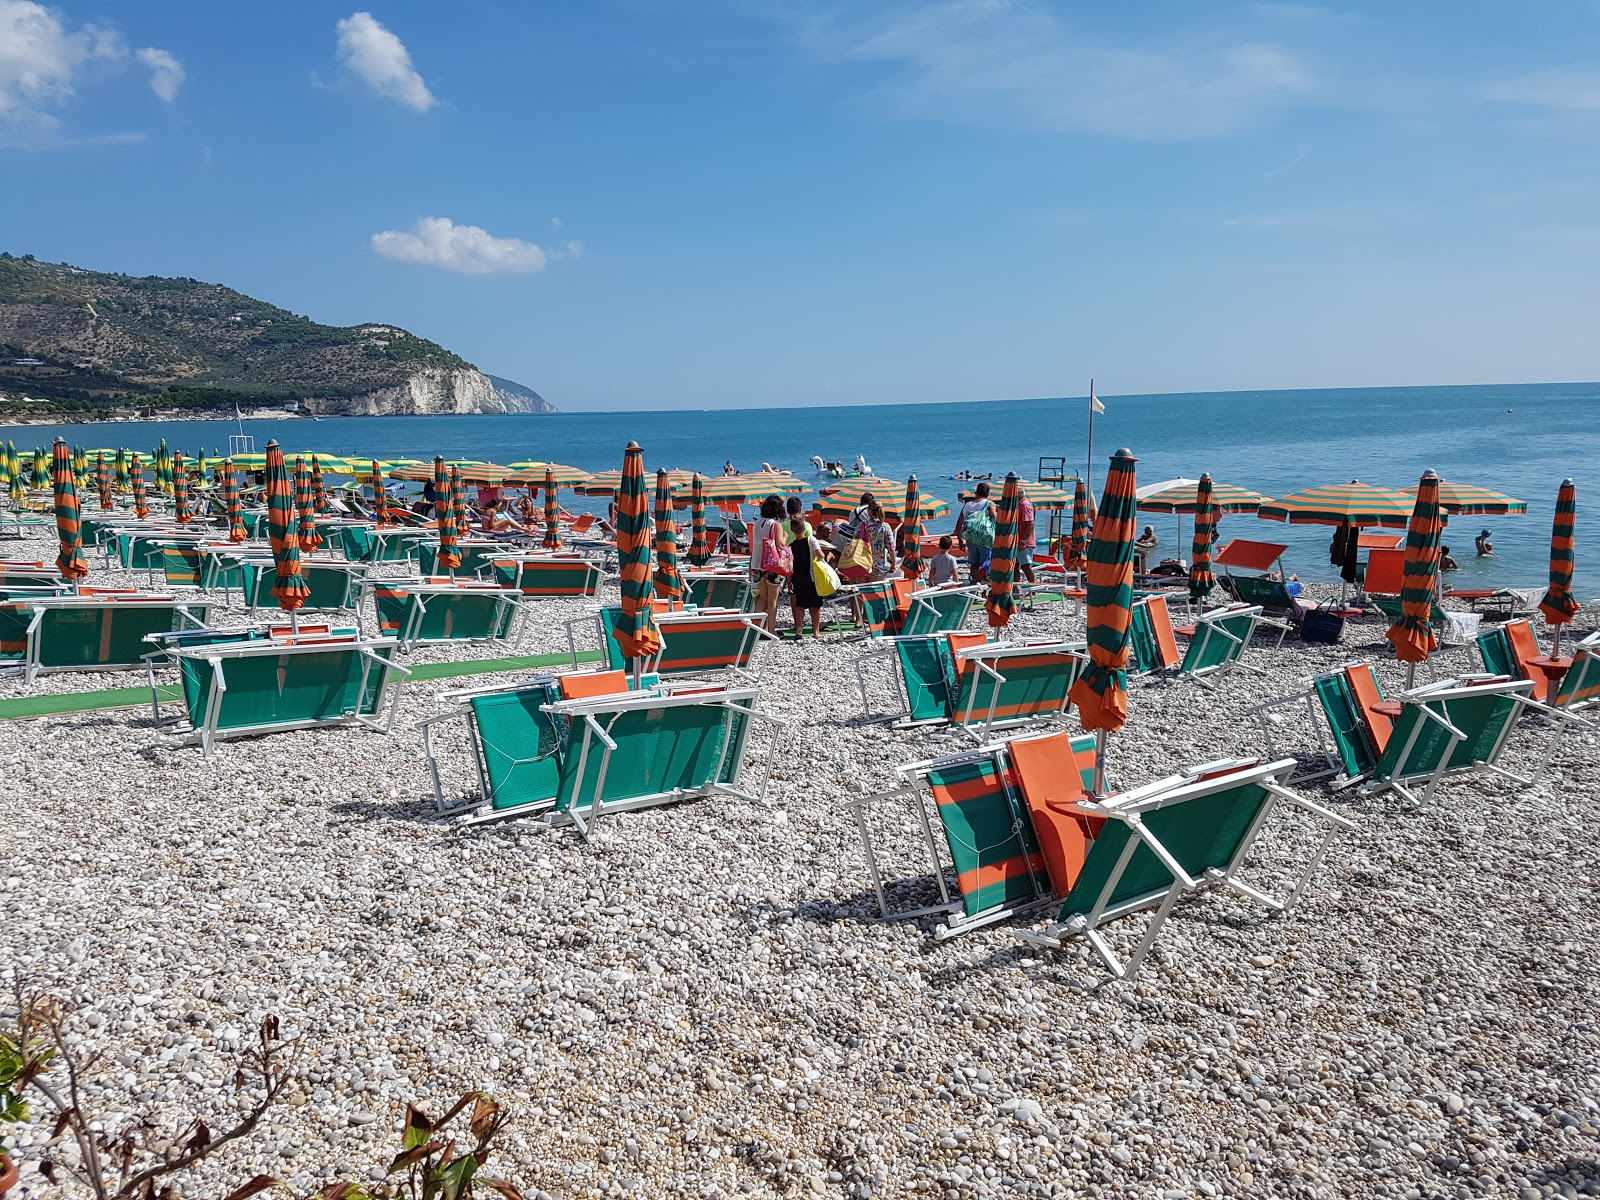 Foto de Spiaggia di Piana di Mattinata - lugar popular entre los conocedores del relax